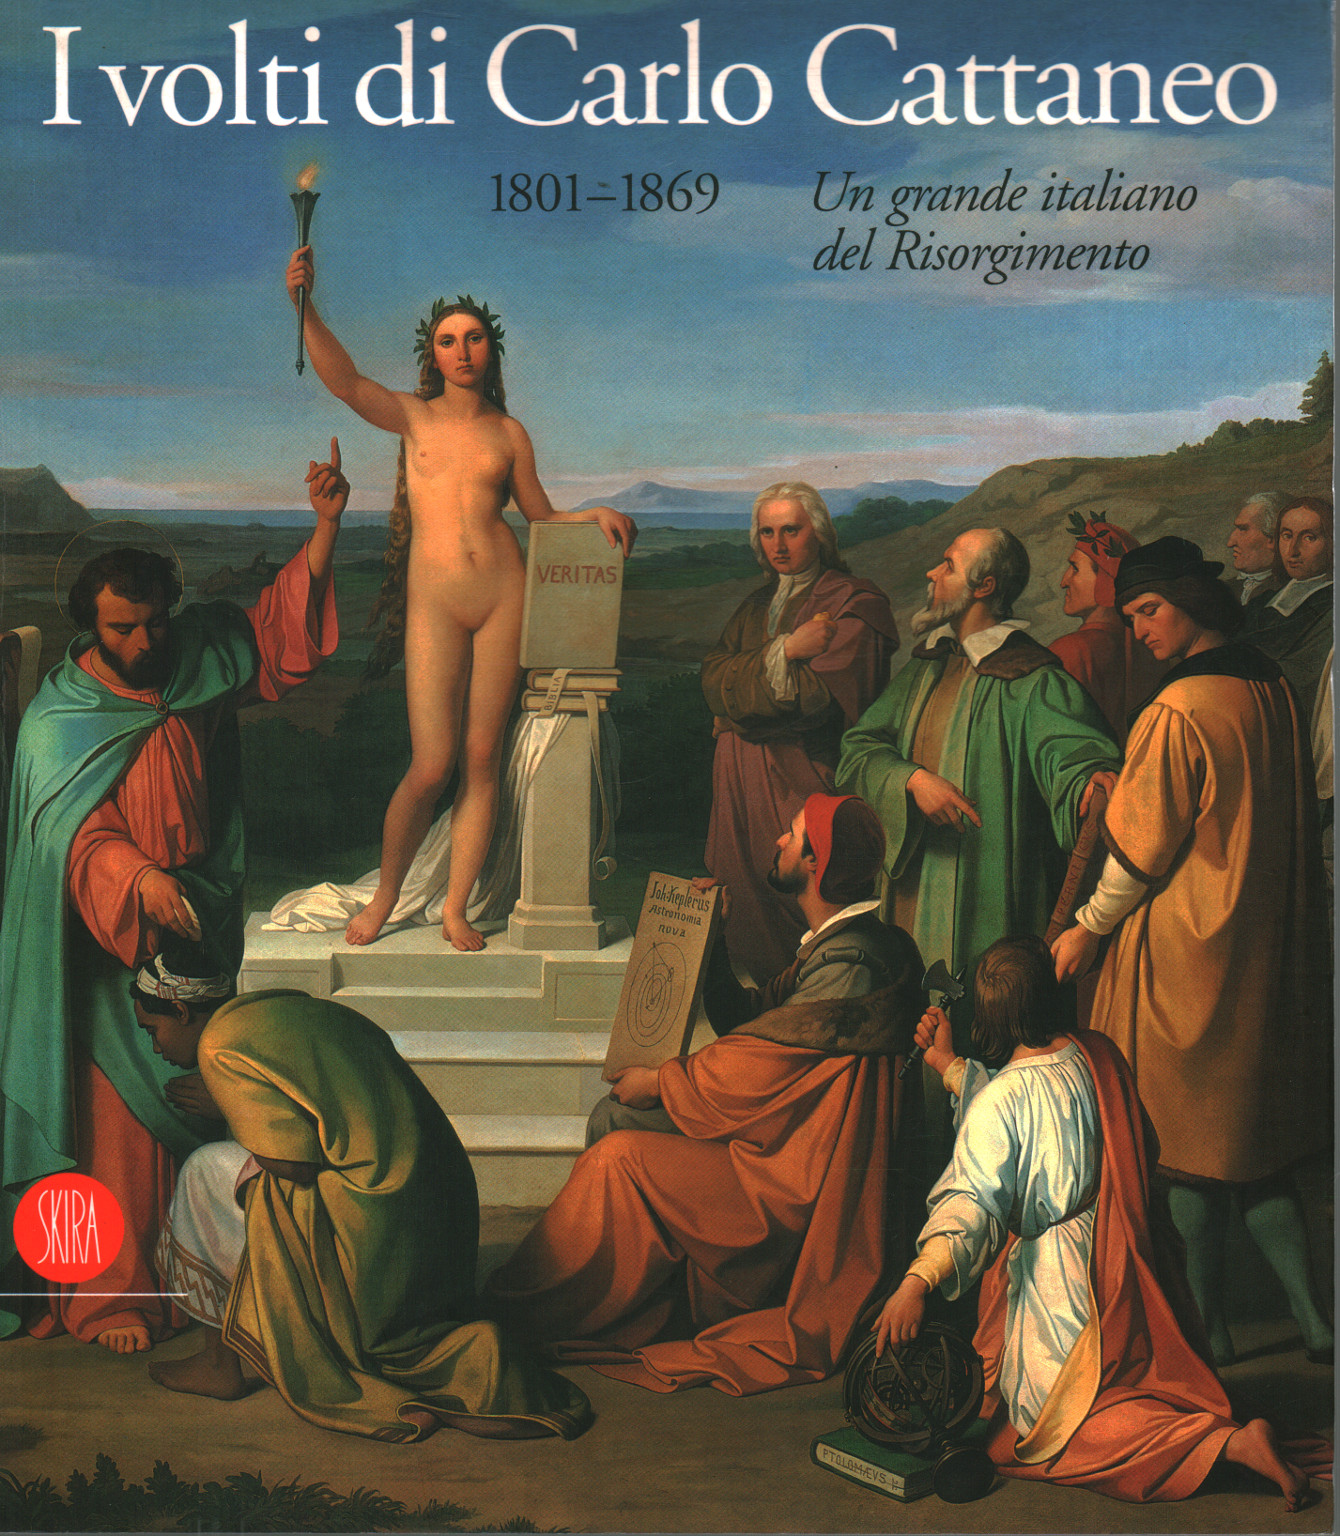 Die gesichter von Carlo Cattaneo 1801-1869, s.zu.